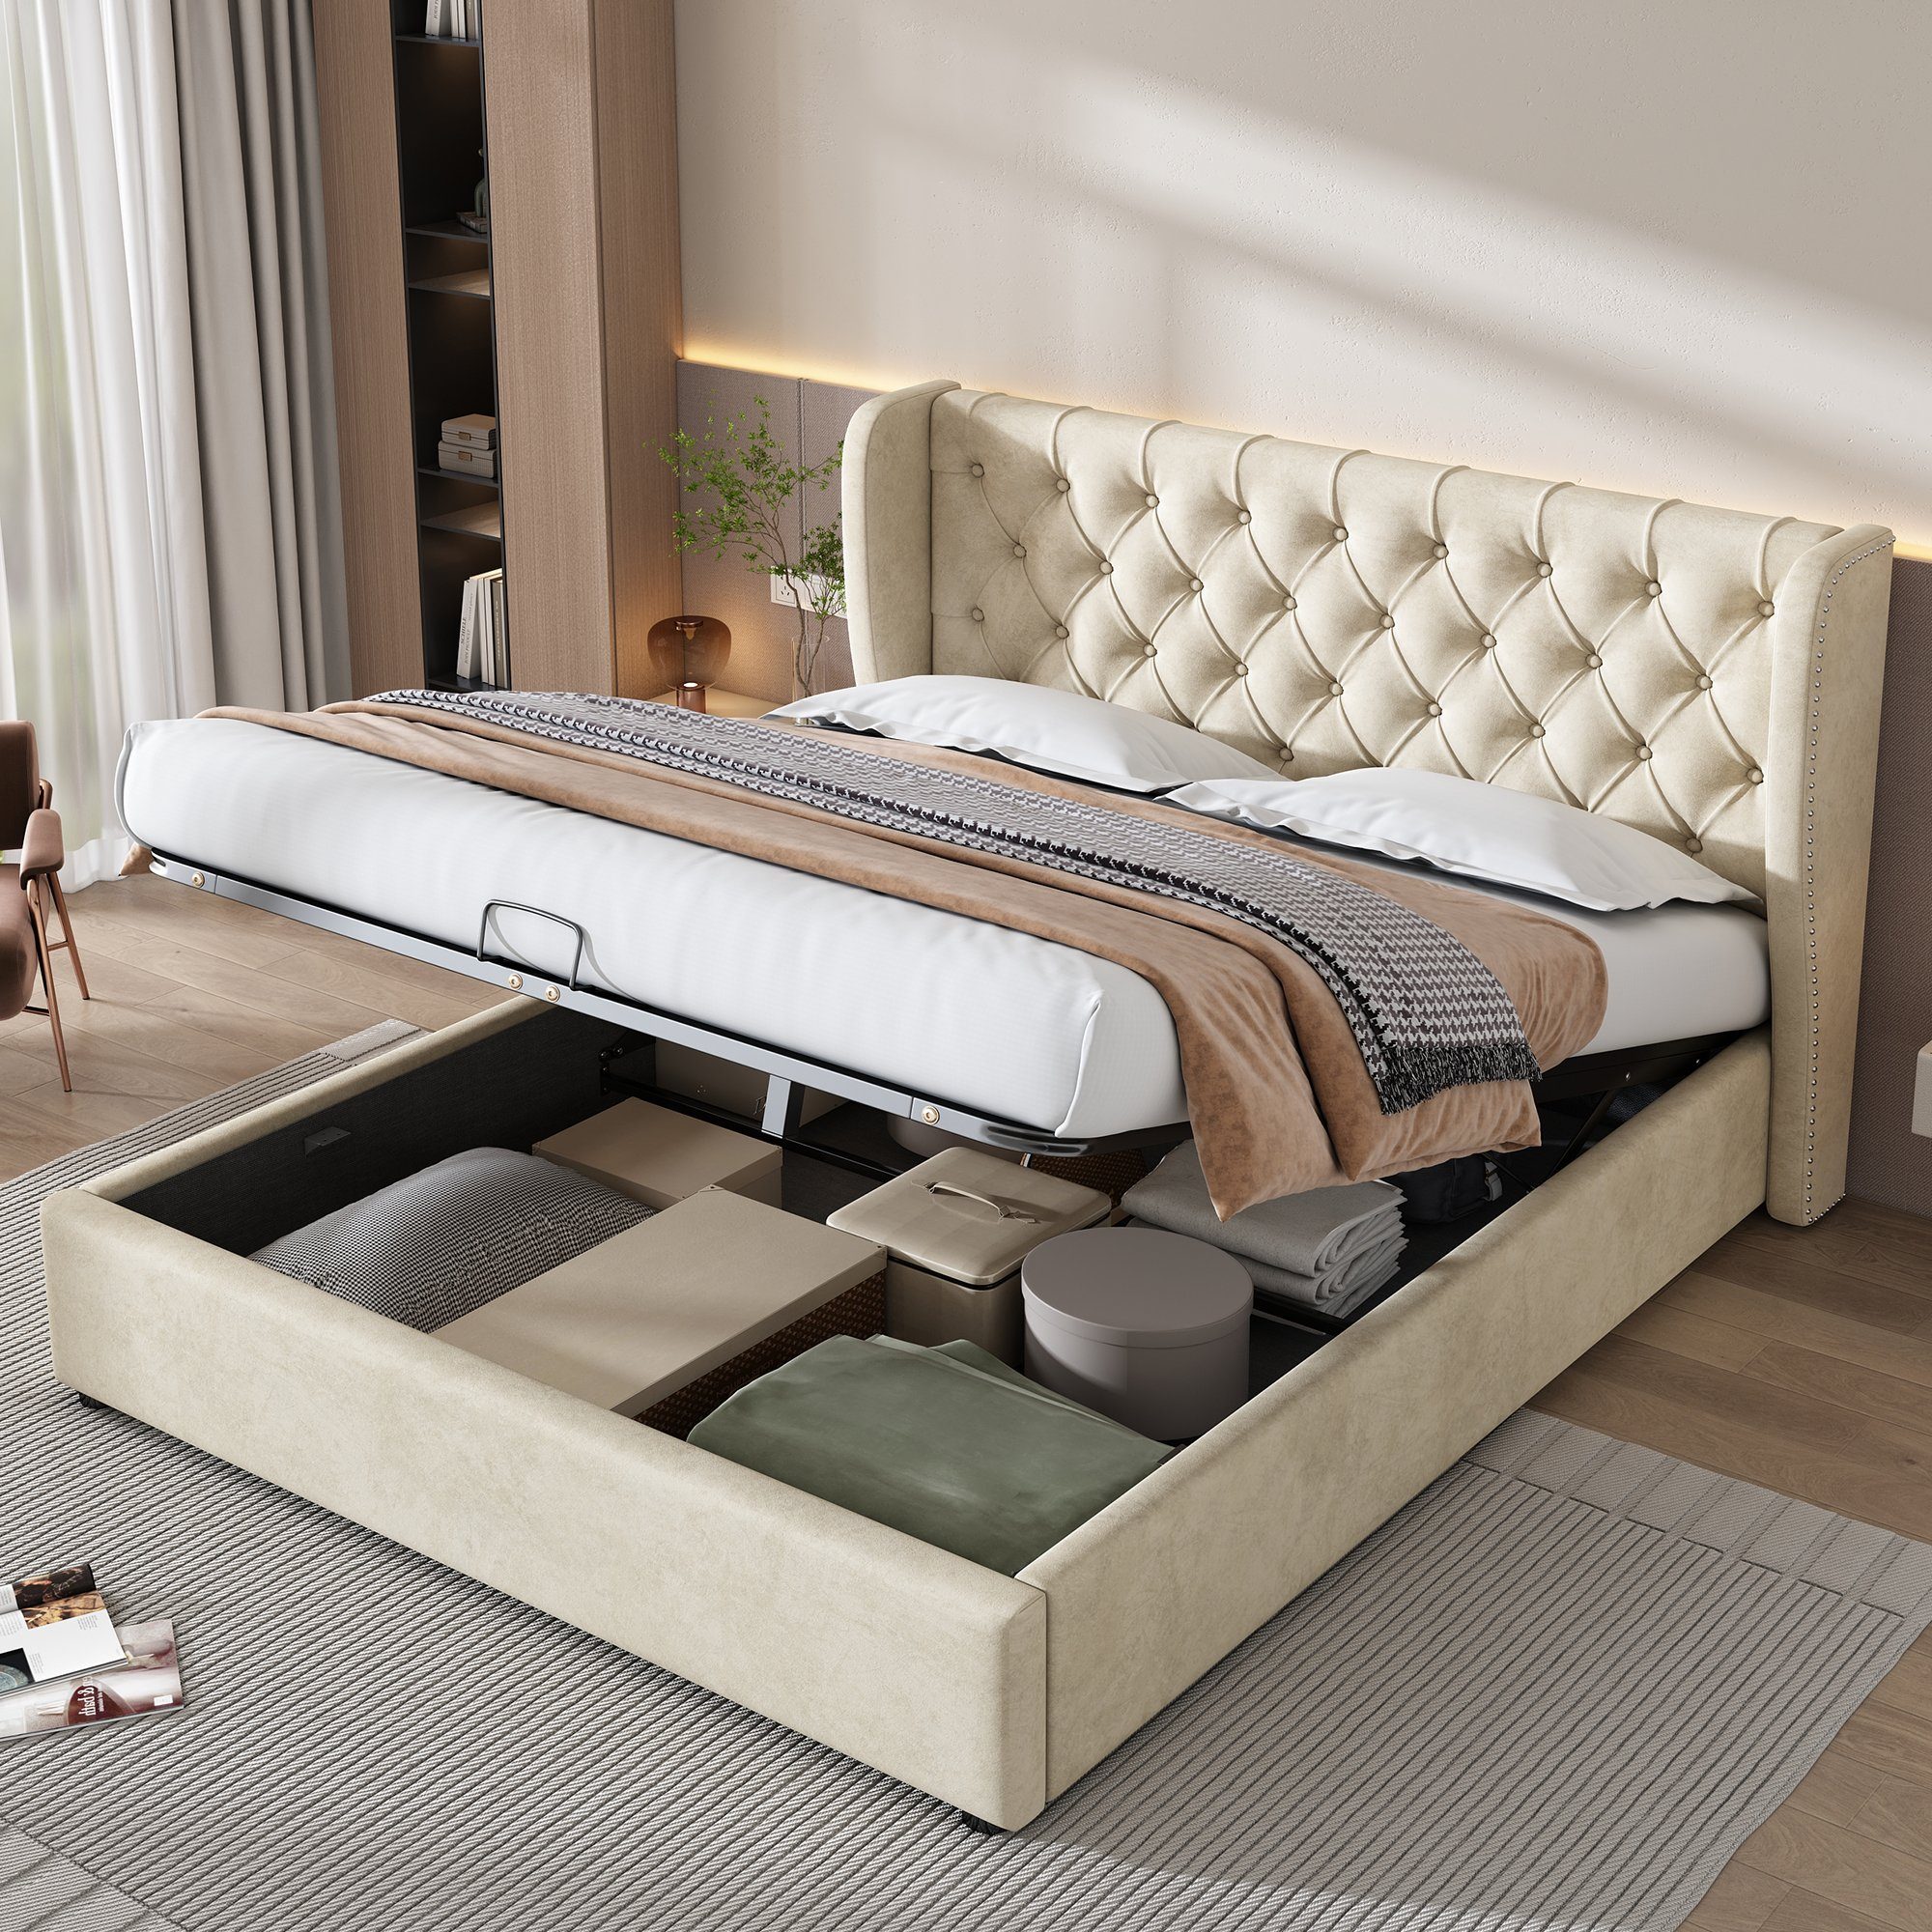 Ulife Polsterbett Doppelbett Funktionsbett mit Lattenrost und Stauraum, Hydraulisches Bett, Samt, 180 cm x 200 cm